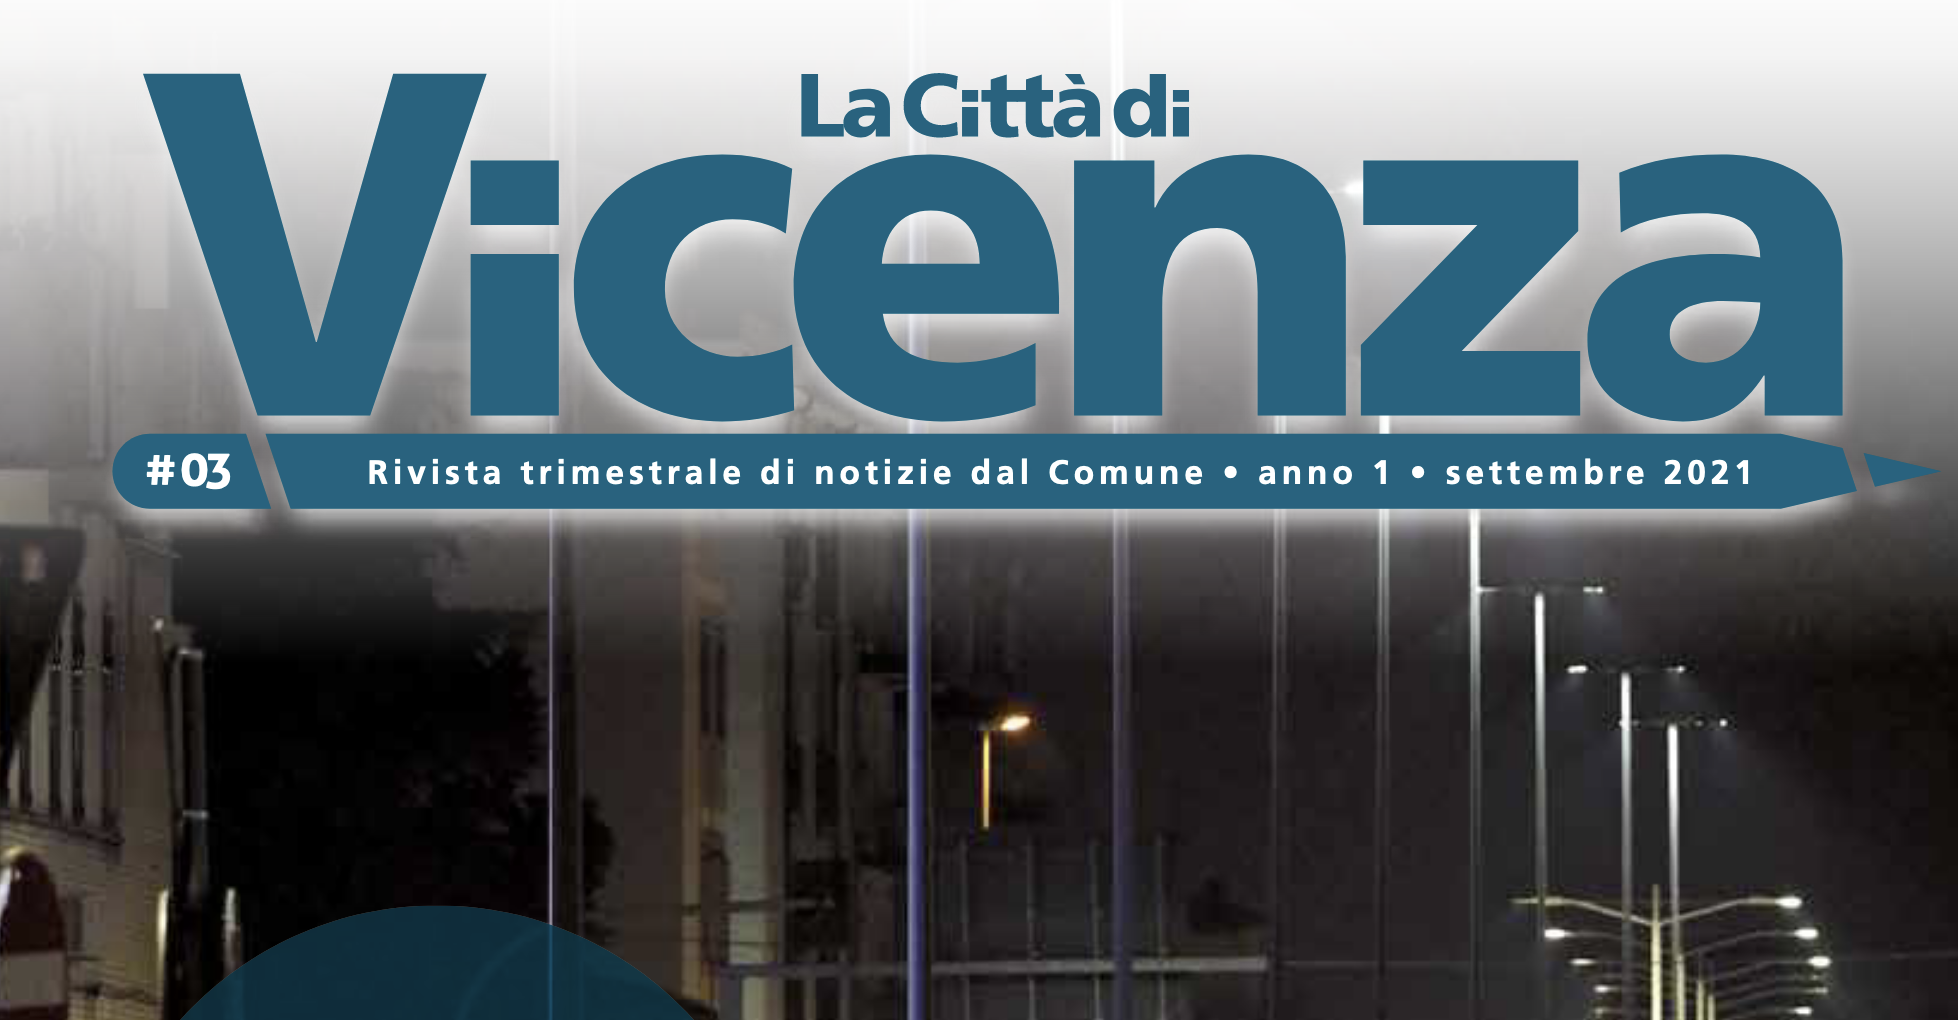 La città di Vicenza di settembre 2021